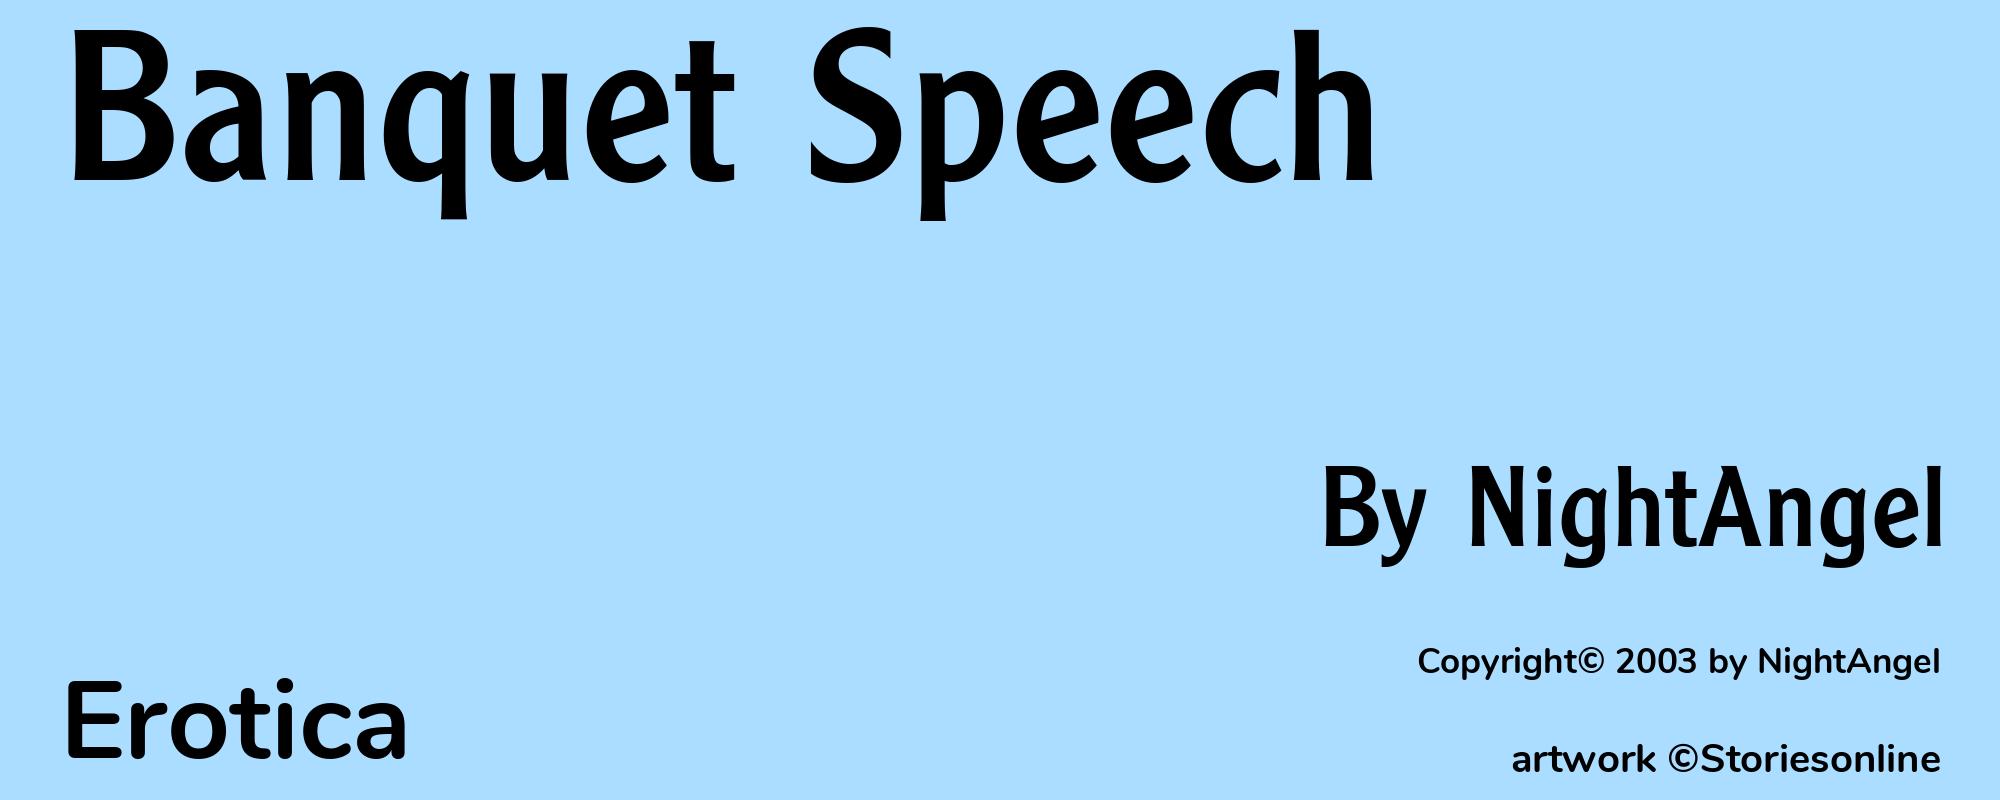 Banquet Speech - Cover